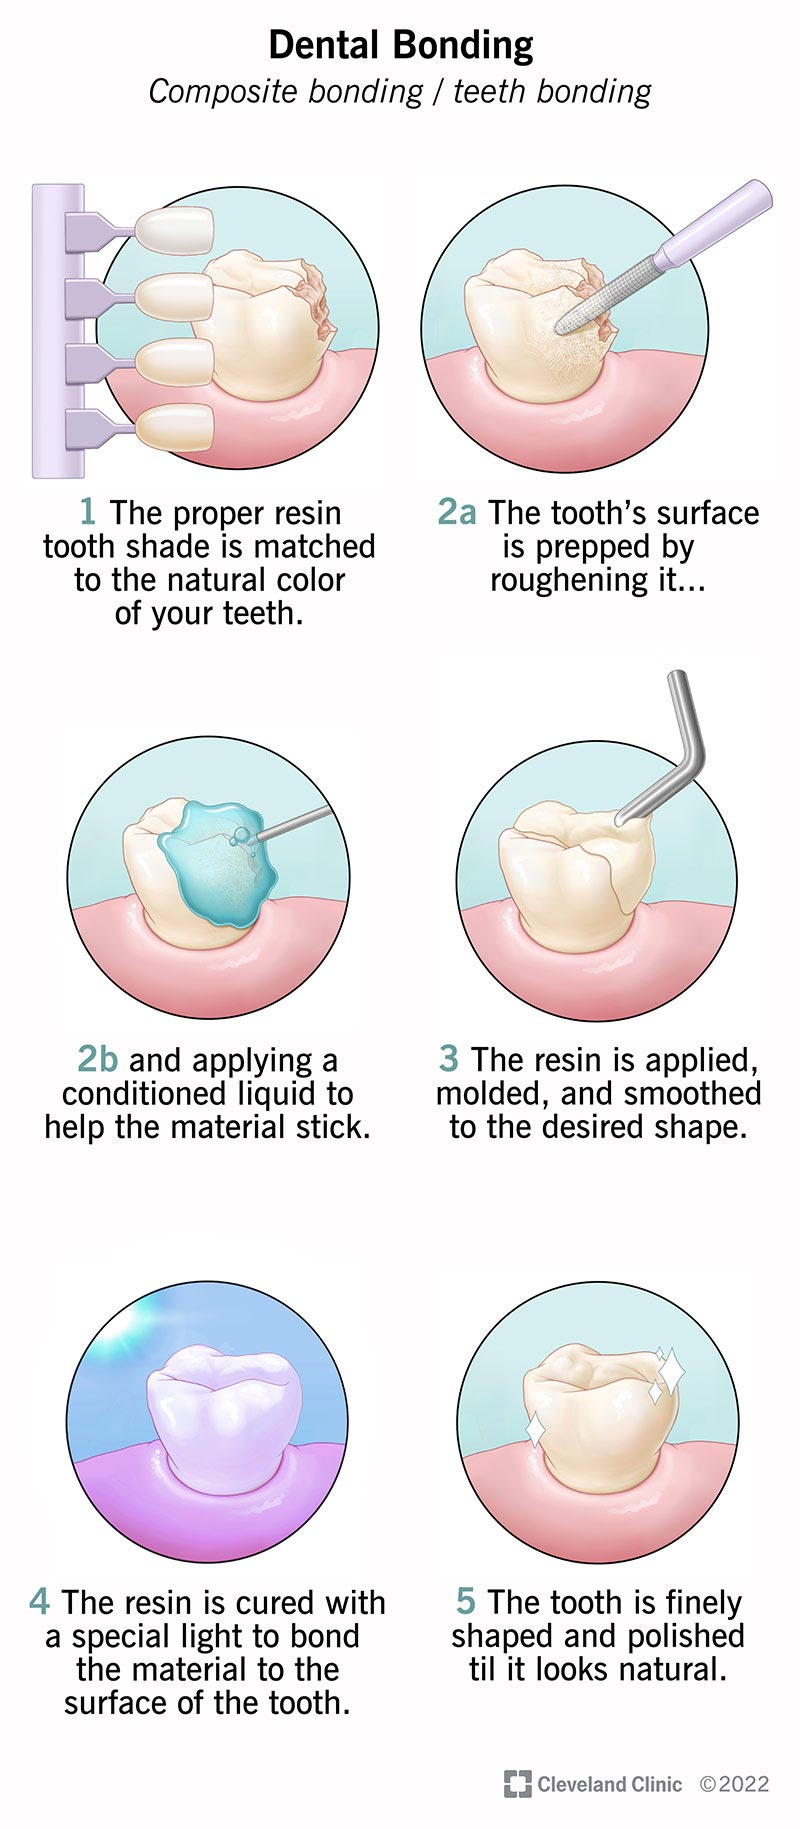 How Is Dental Bonding Done?